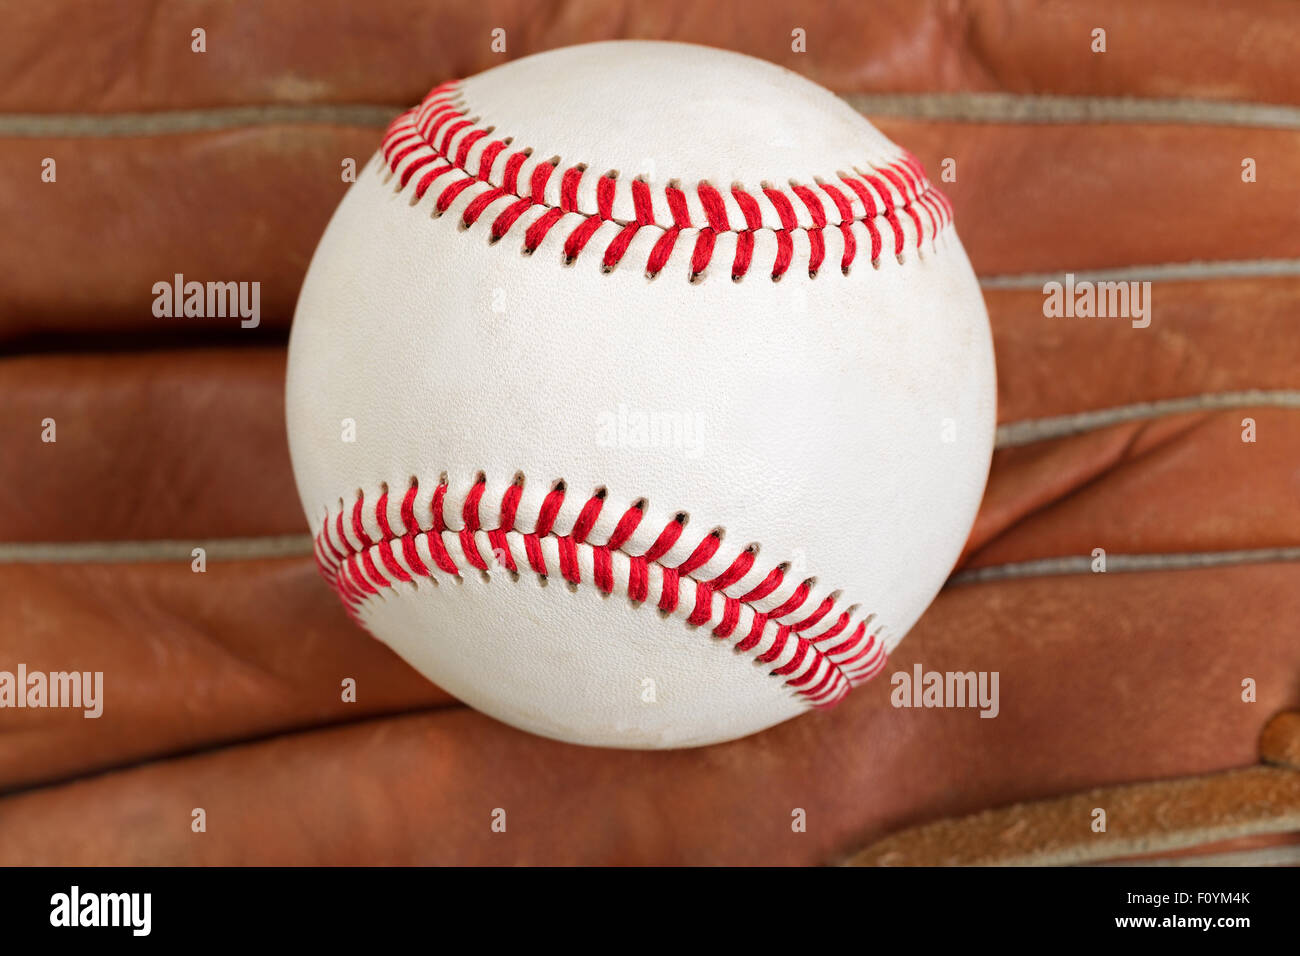 In der Nähe des Baseballs, selektiven Fokus auf Center, mit Leder-Handschuh im Hintergrund. In gefüllten Frame-Layout formatieren. Stockfoto